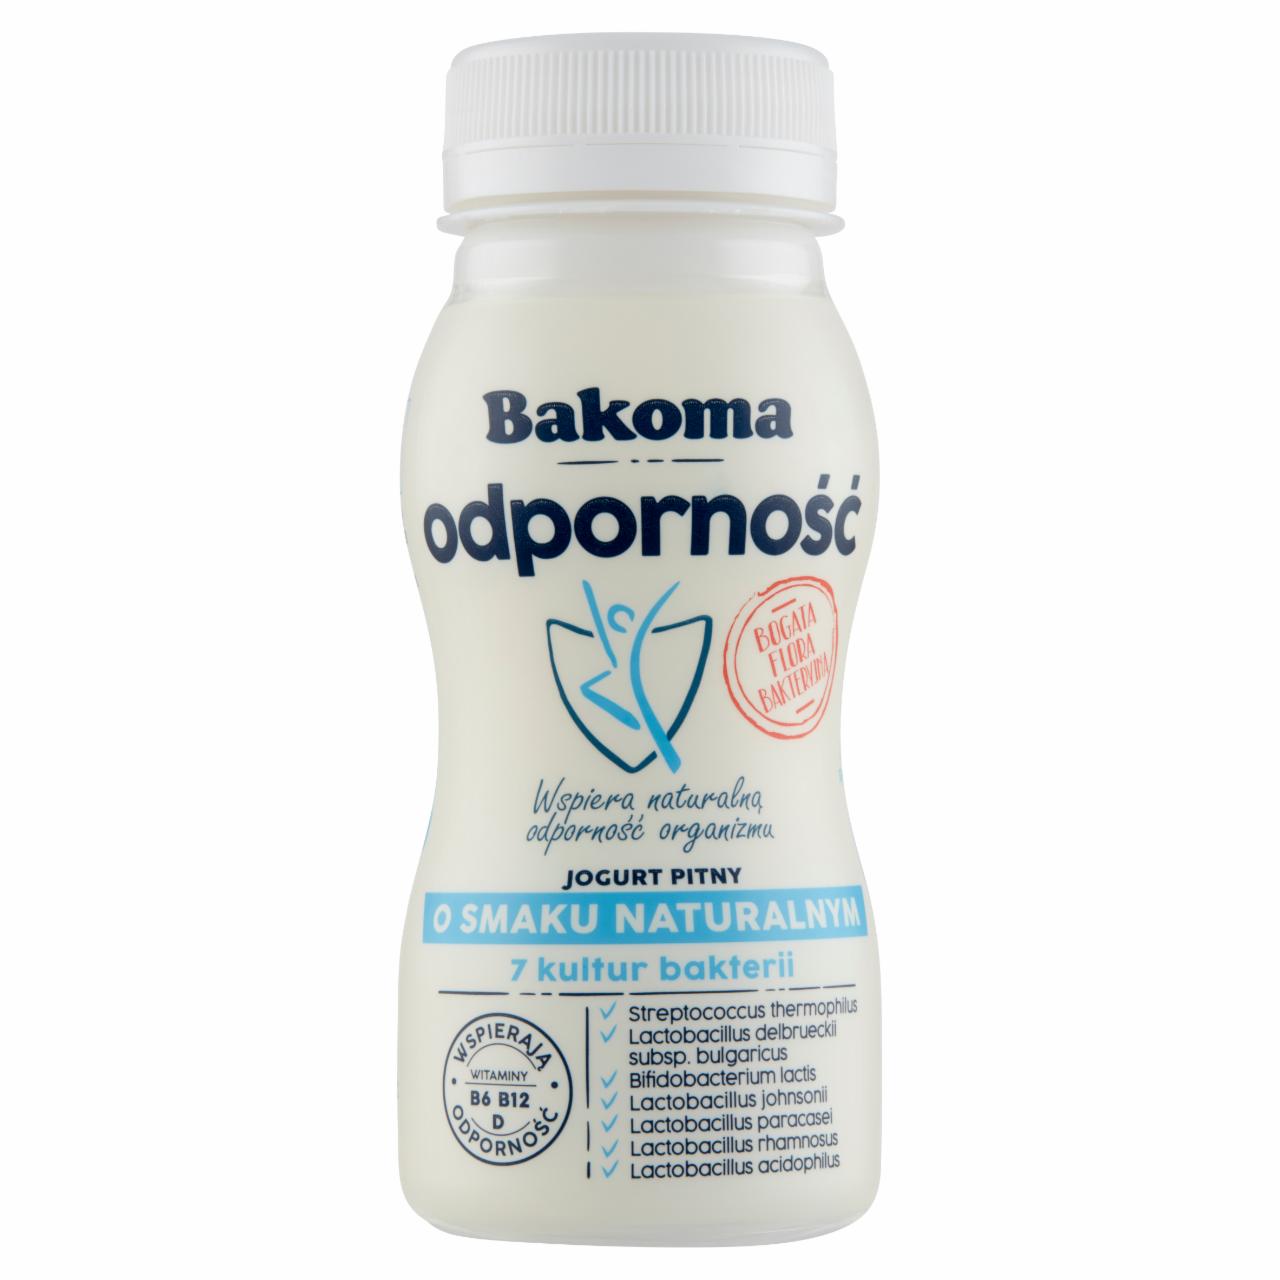 Zdjęcia - Bakoma Odporność Jogurt pitny o smaku naturalnym 125 g